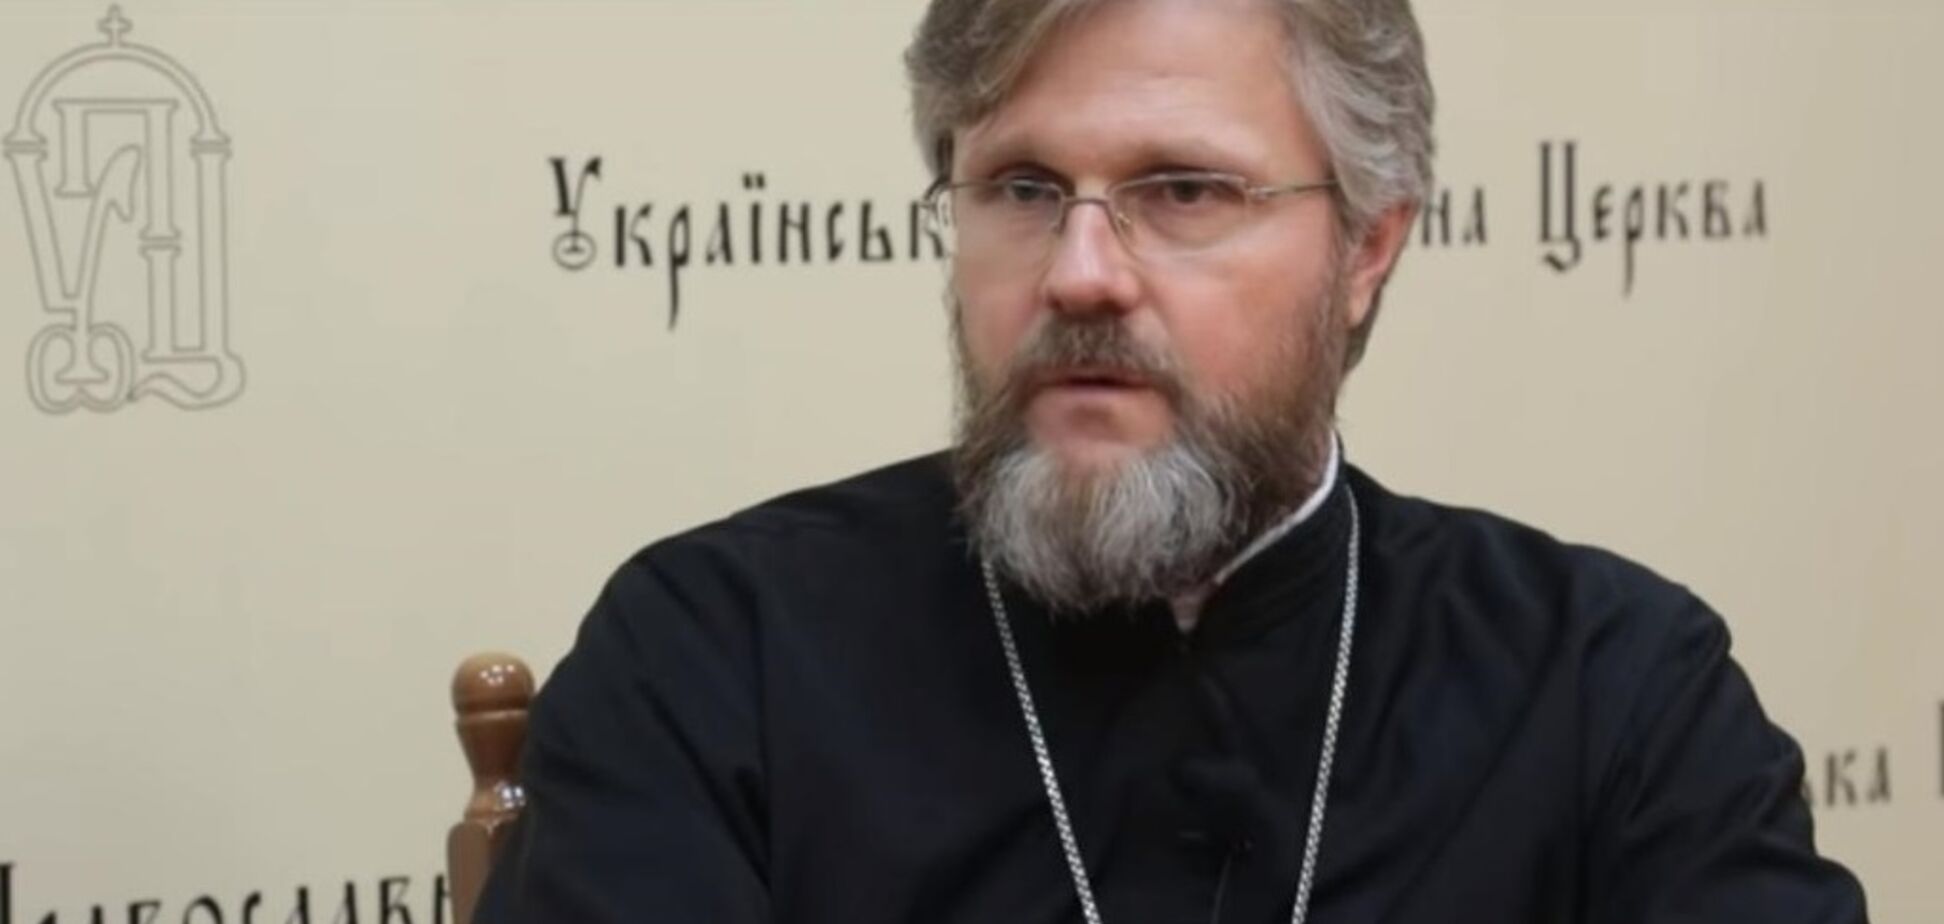 Томос Україні: УПЦ МП закликала екстрено скликати Собор з усіх патріархів